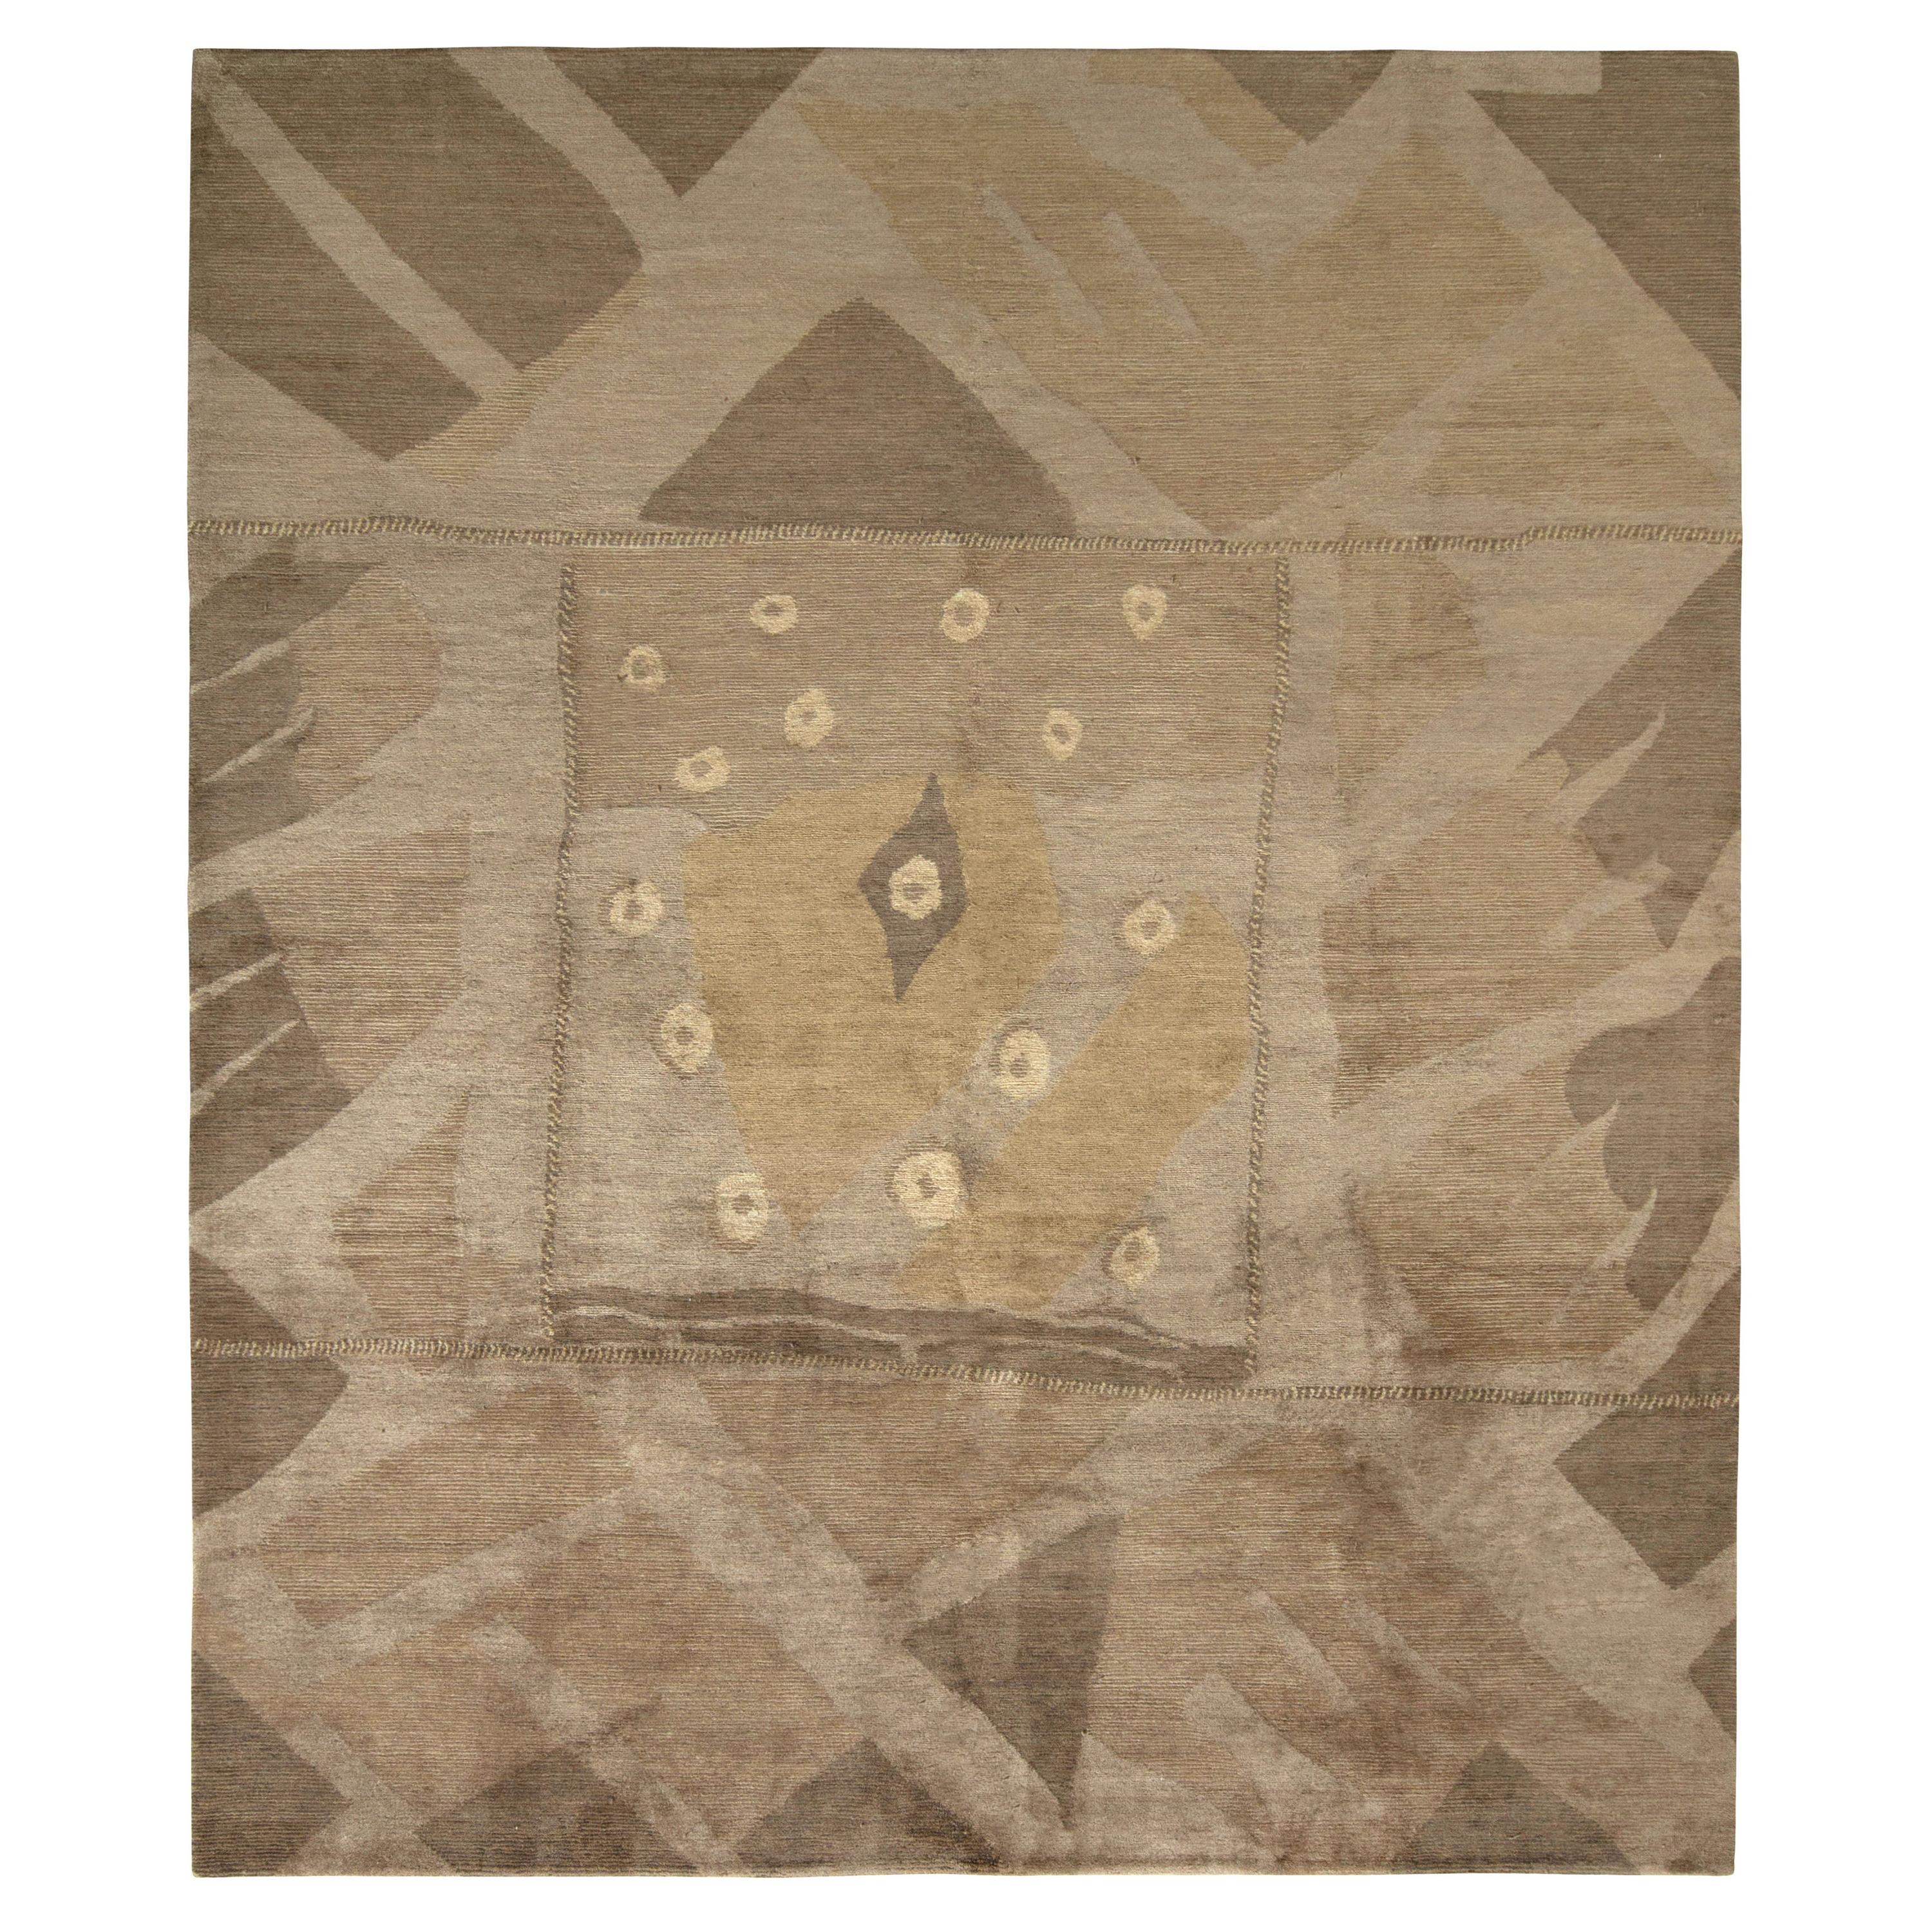 Tapis & Kilims - Tapis déco moderne de style cubiste en motif géométrique brun beige